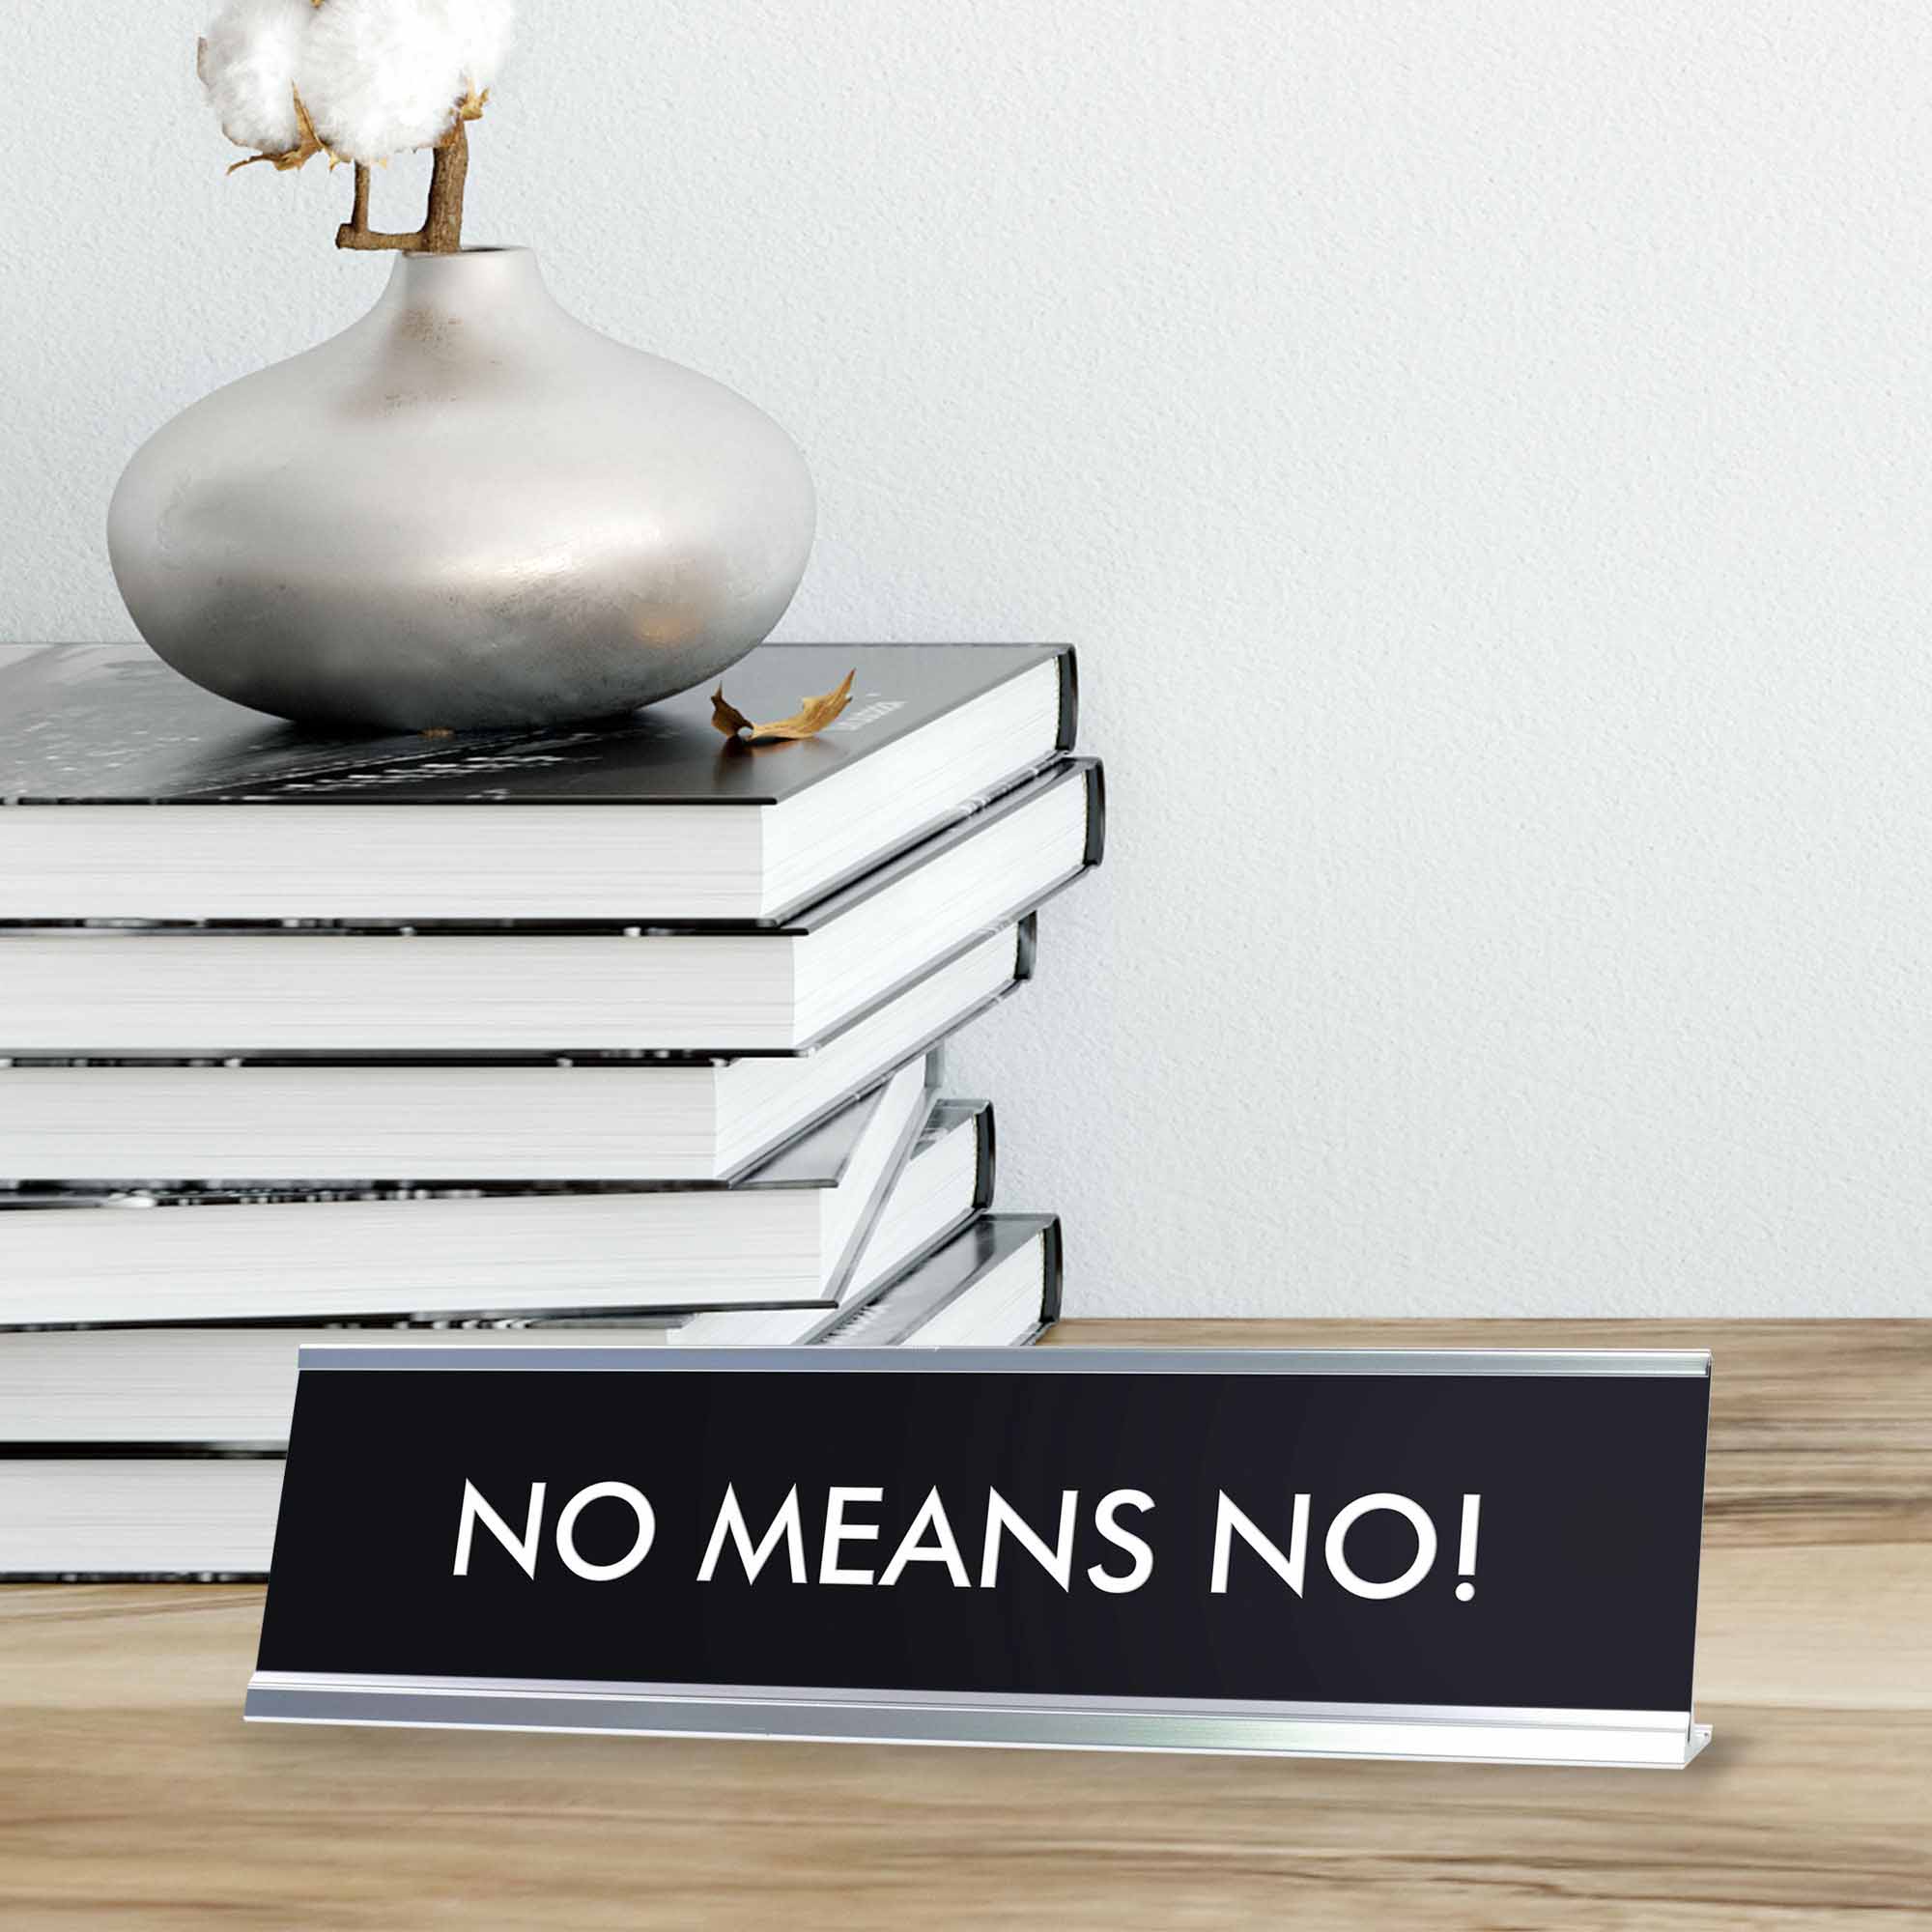 NO MEANS NO! Novelty Desk Sign